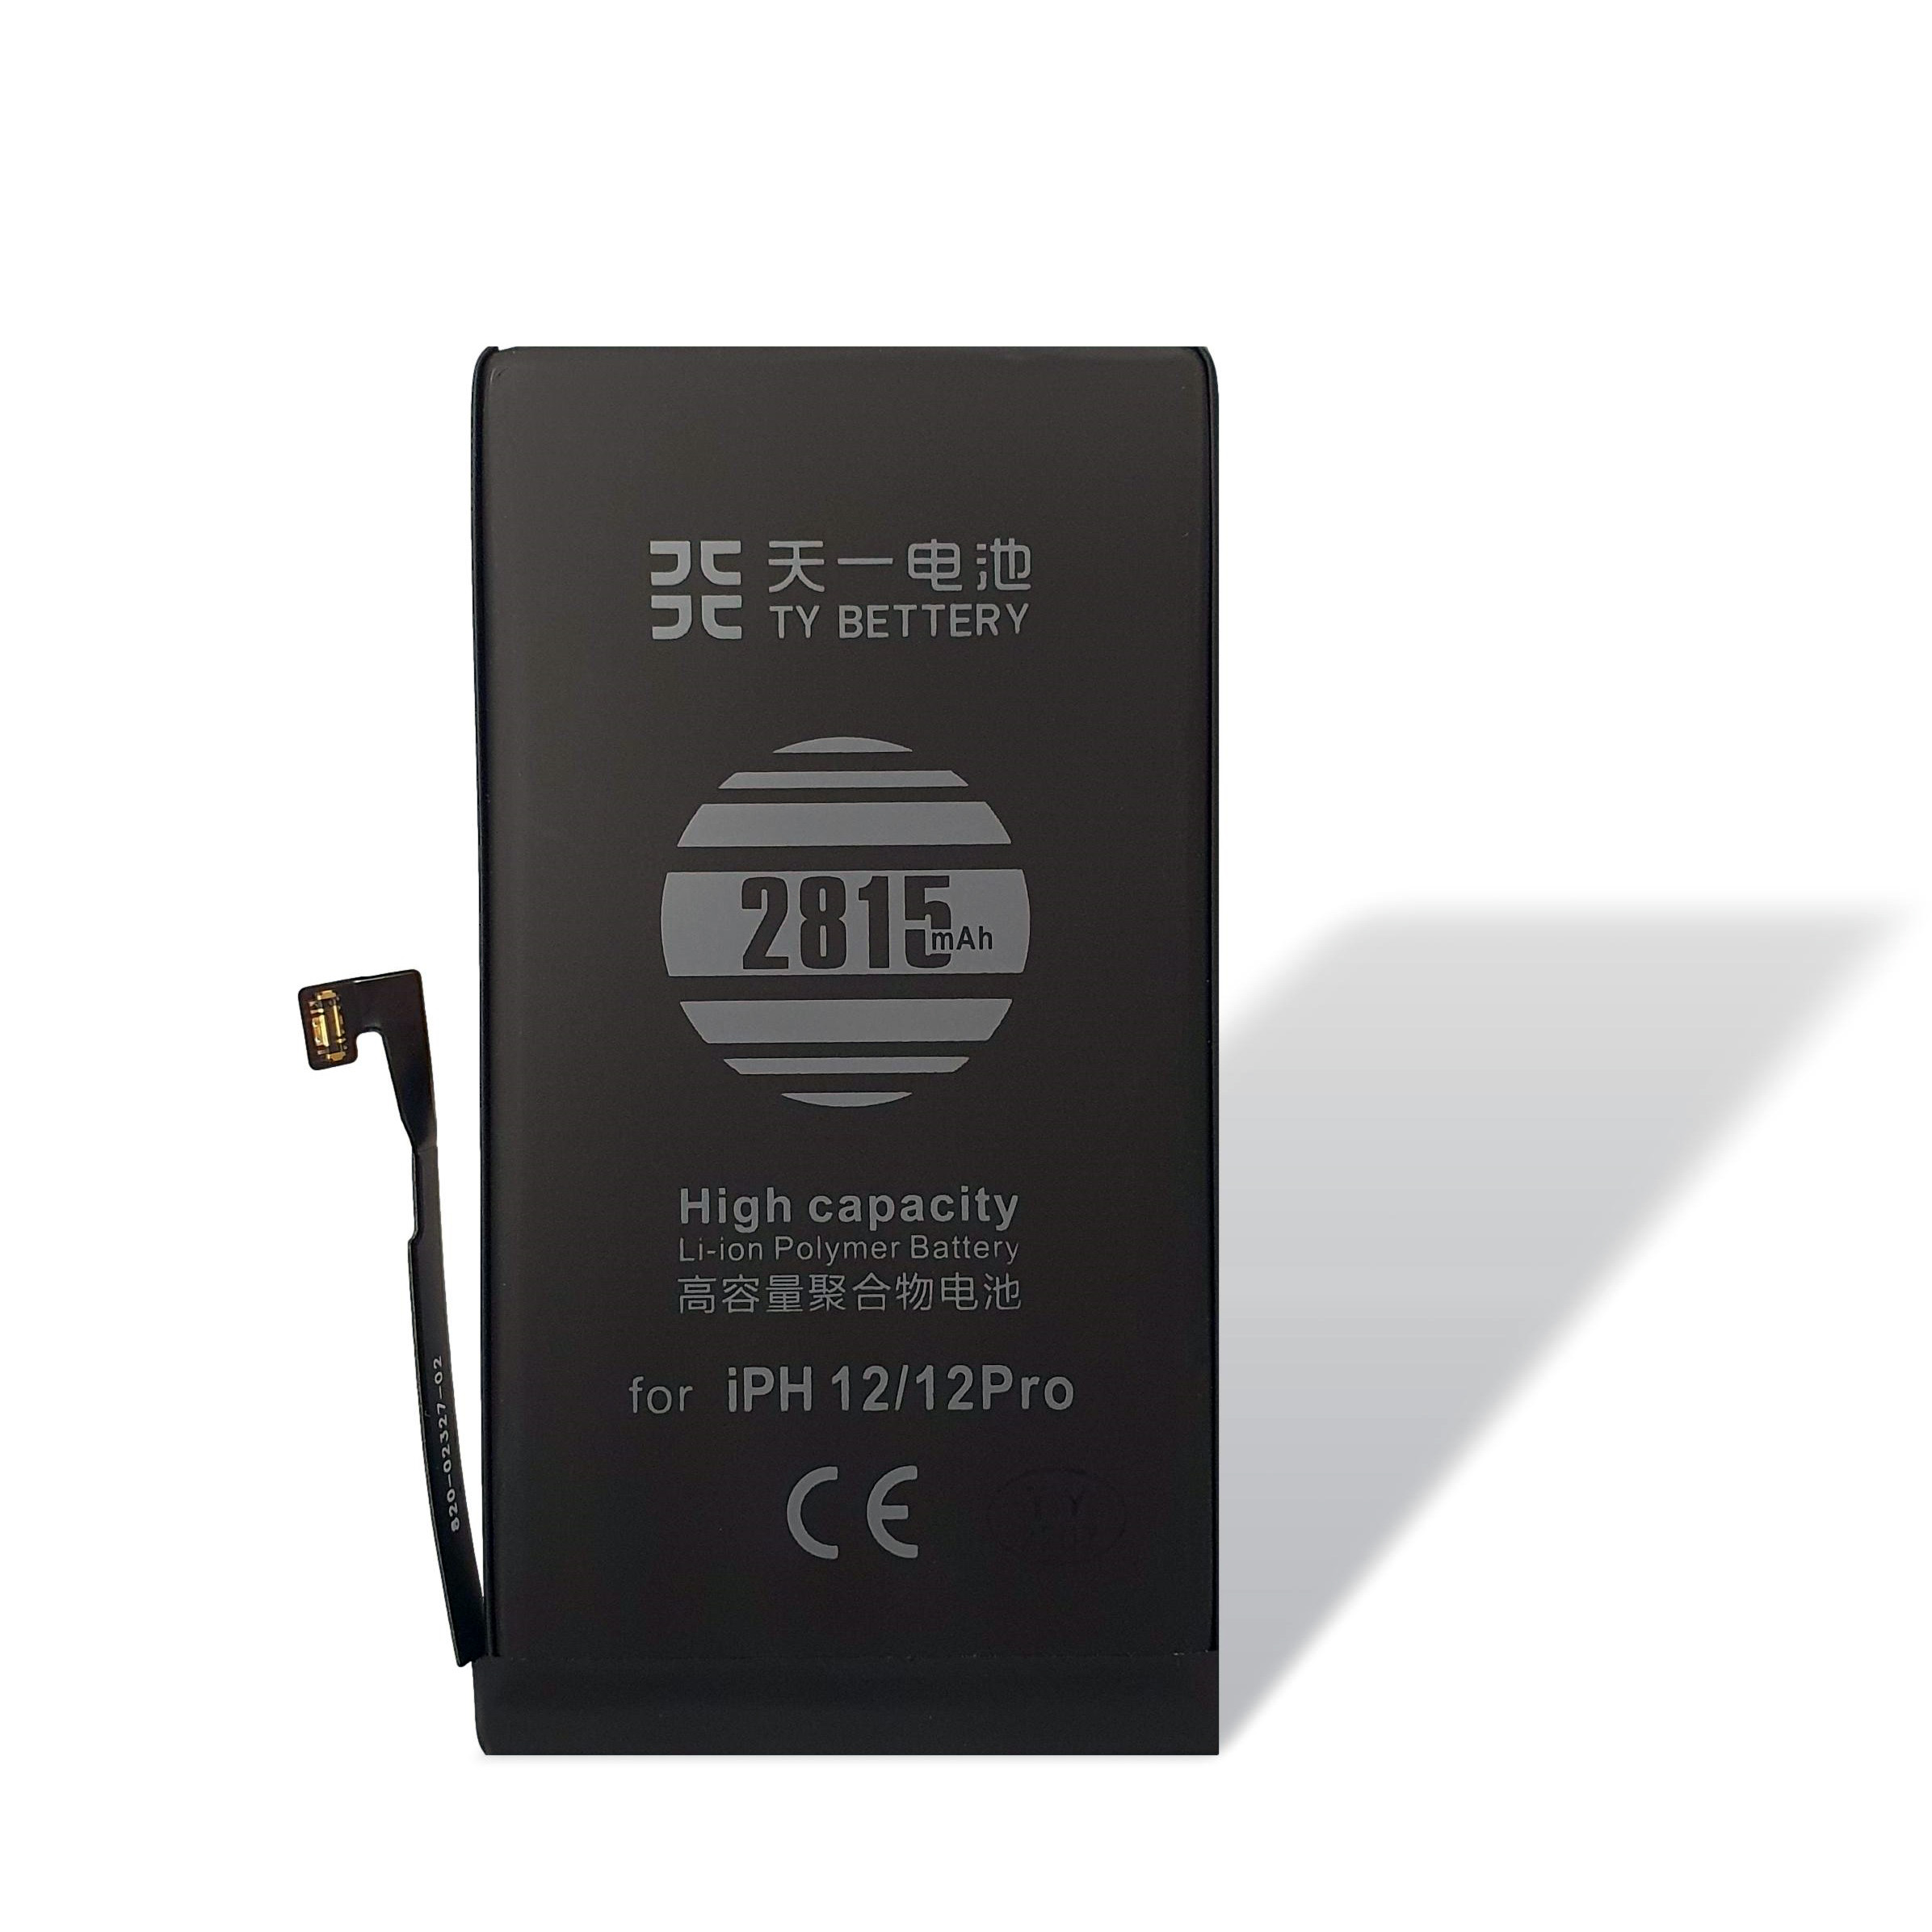 Batteria iPhone 12 Pro Ty Bettery: compatibile e garantita, spedizione 24H